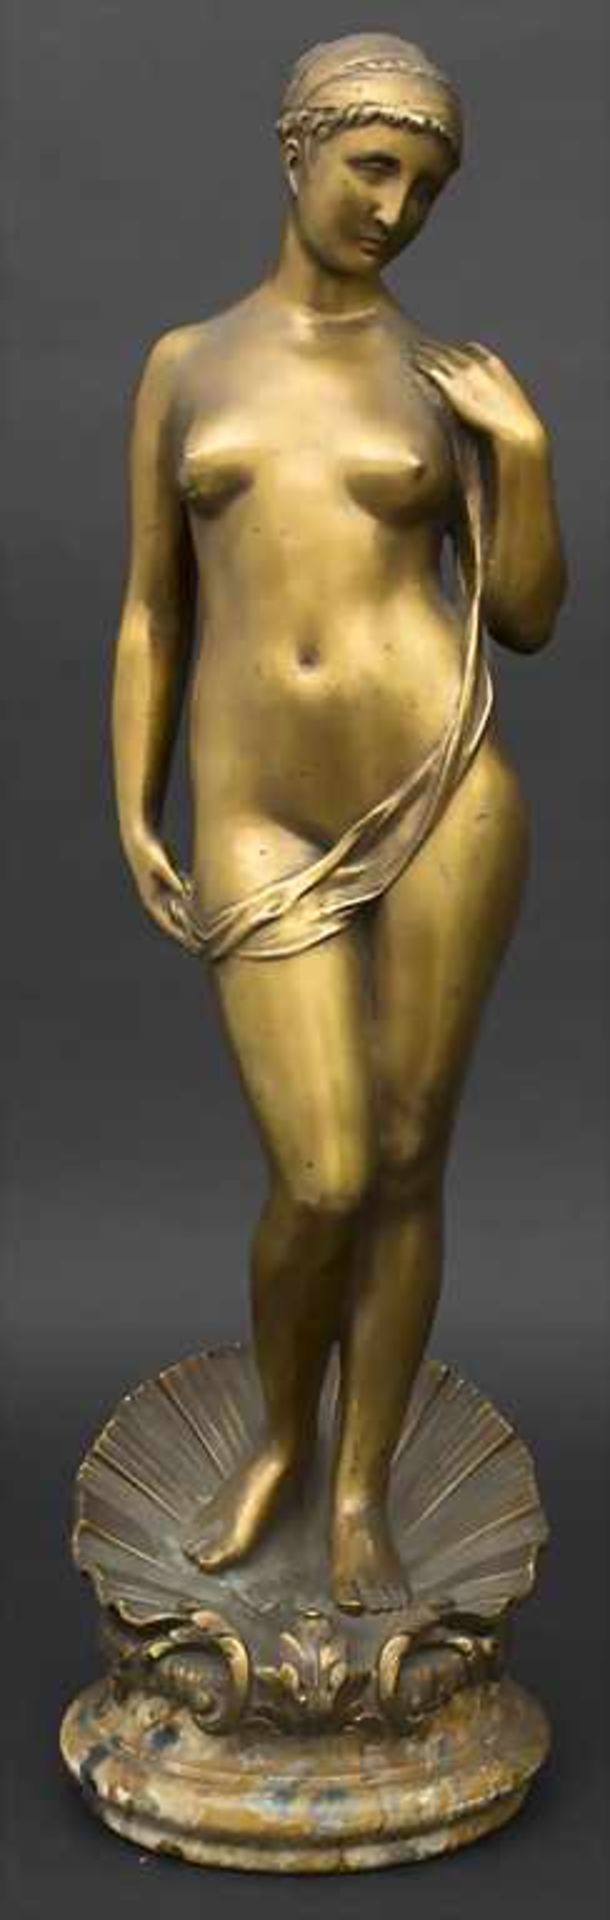 Marcel Rau 1886-1966, Die Geburt der Venus / The birth of Venus, Marcel Rau, 1917